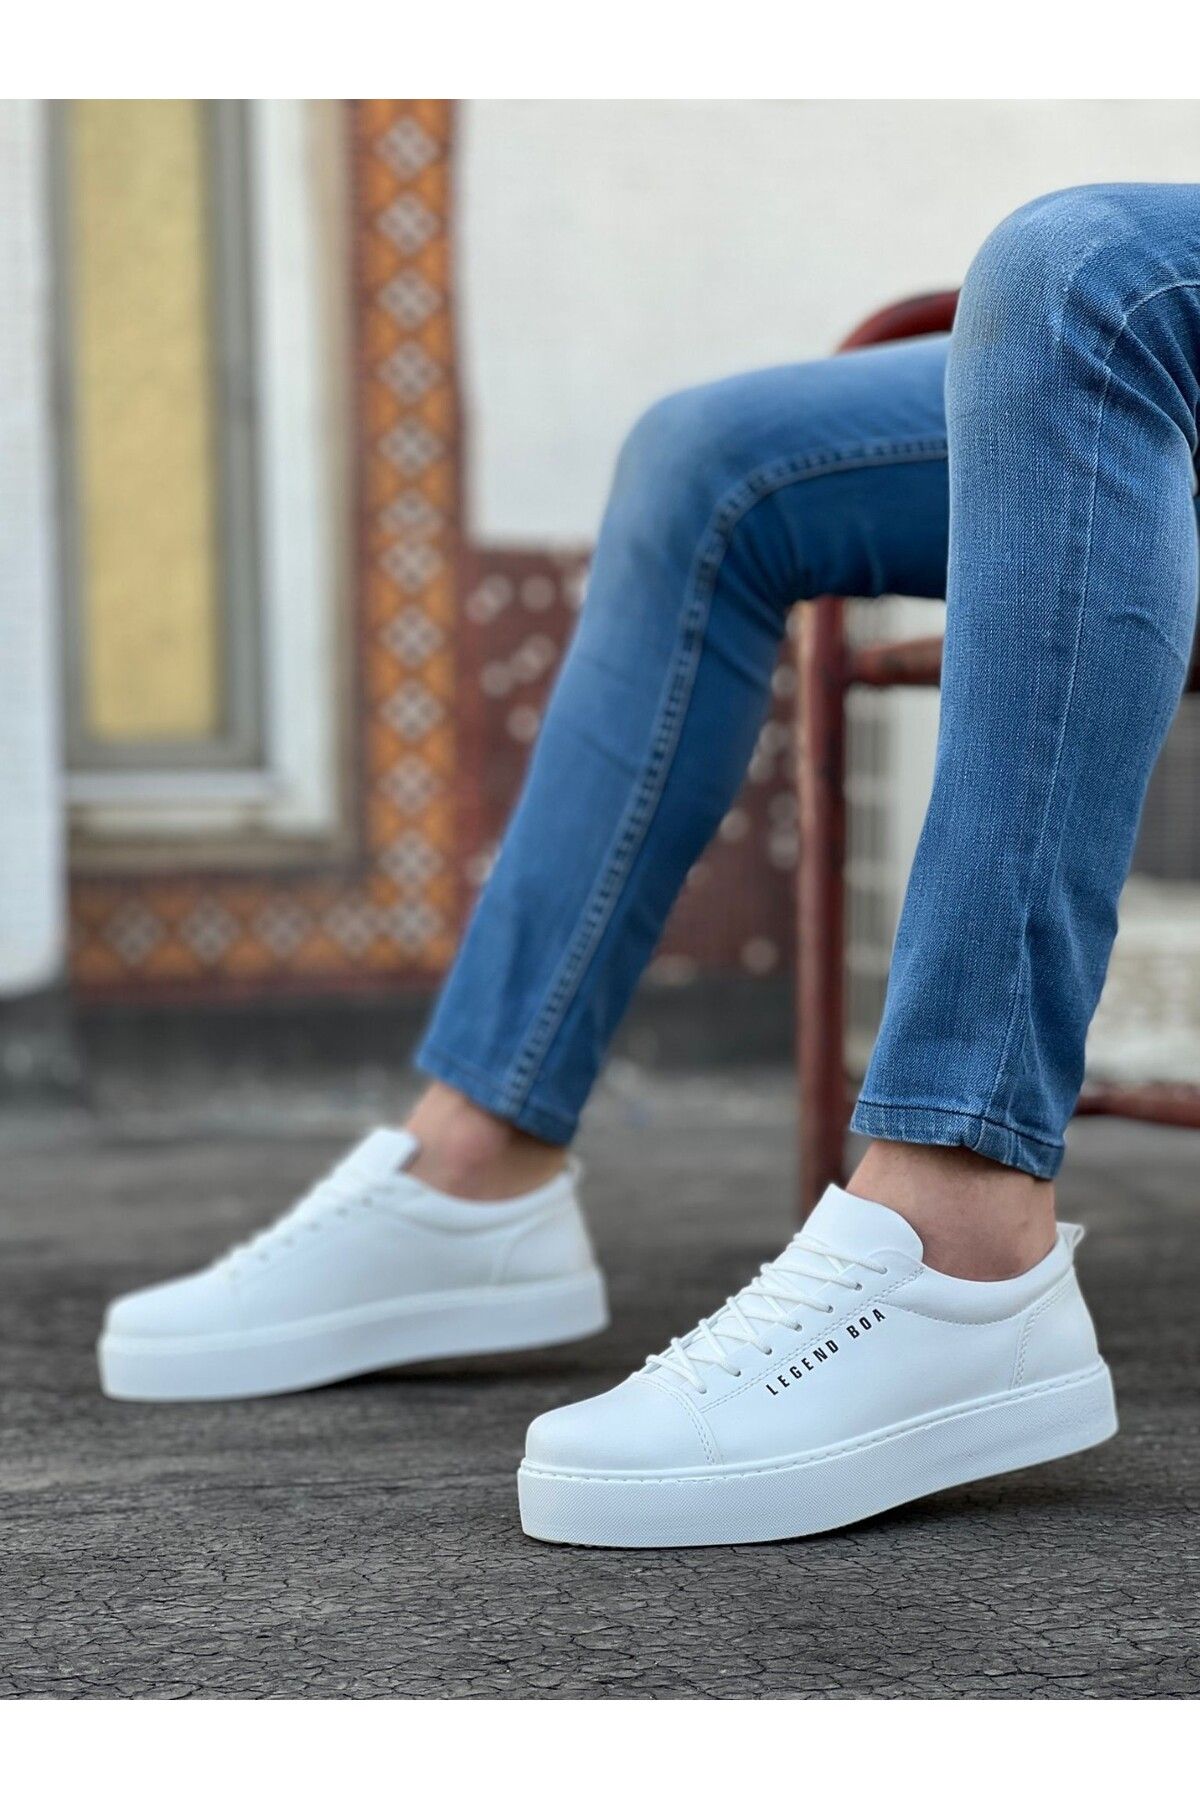 BOUIS Erkek Beyaz Bağcıklı Cilt Deri Klasik Ayakkabı Günlük Spor Şık Yüksek Düz Taban Rahat Sneaker